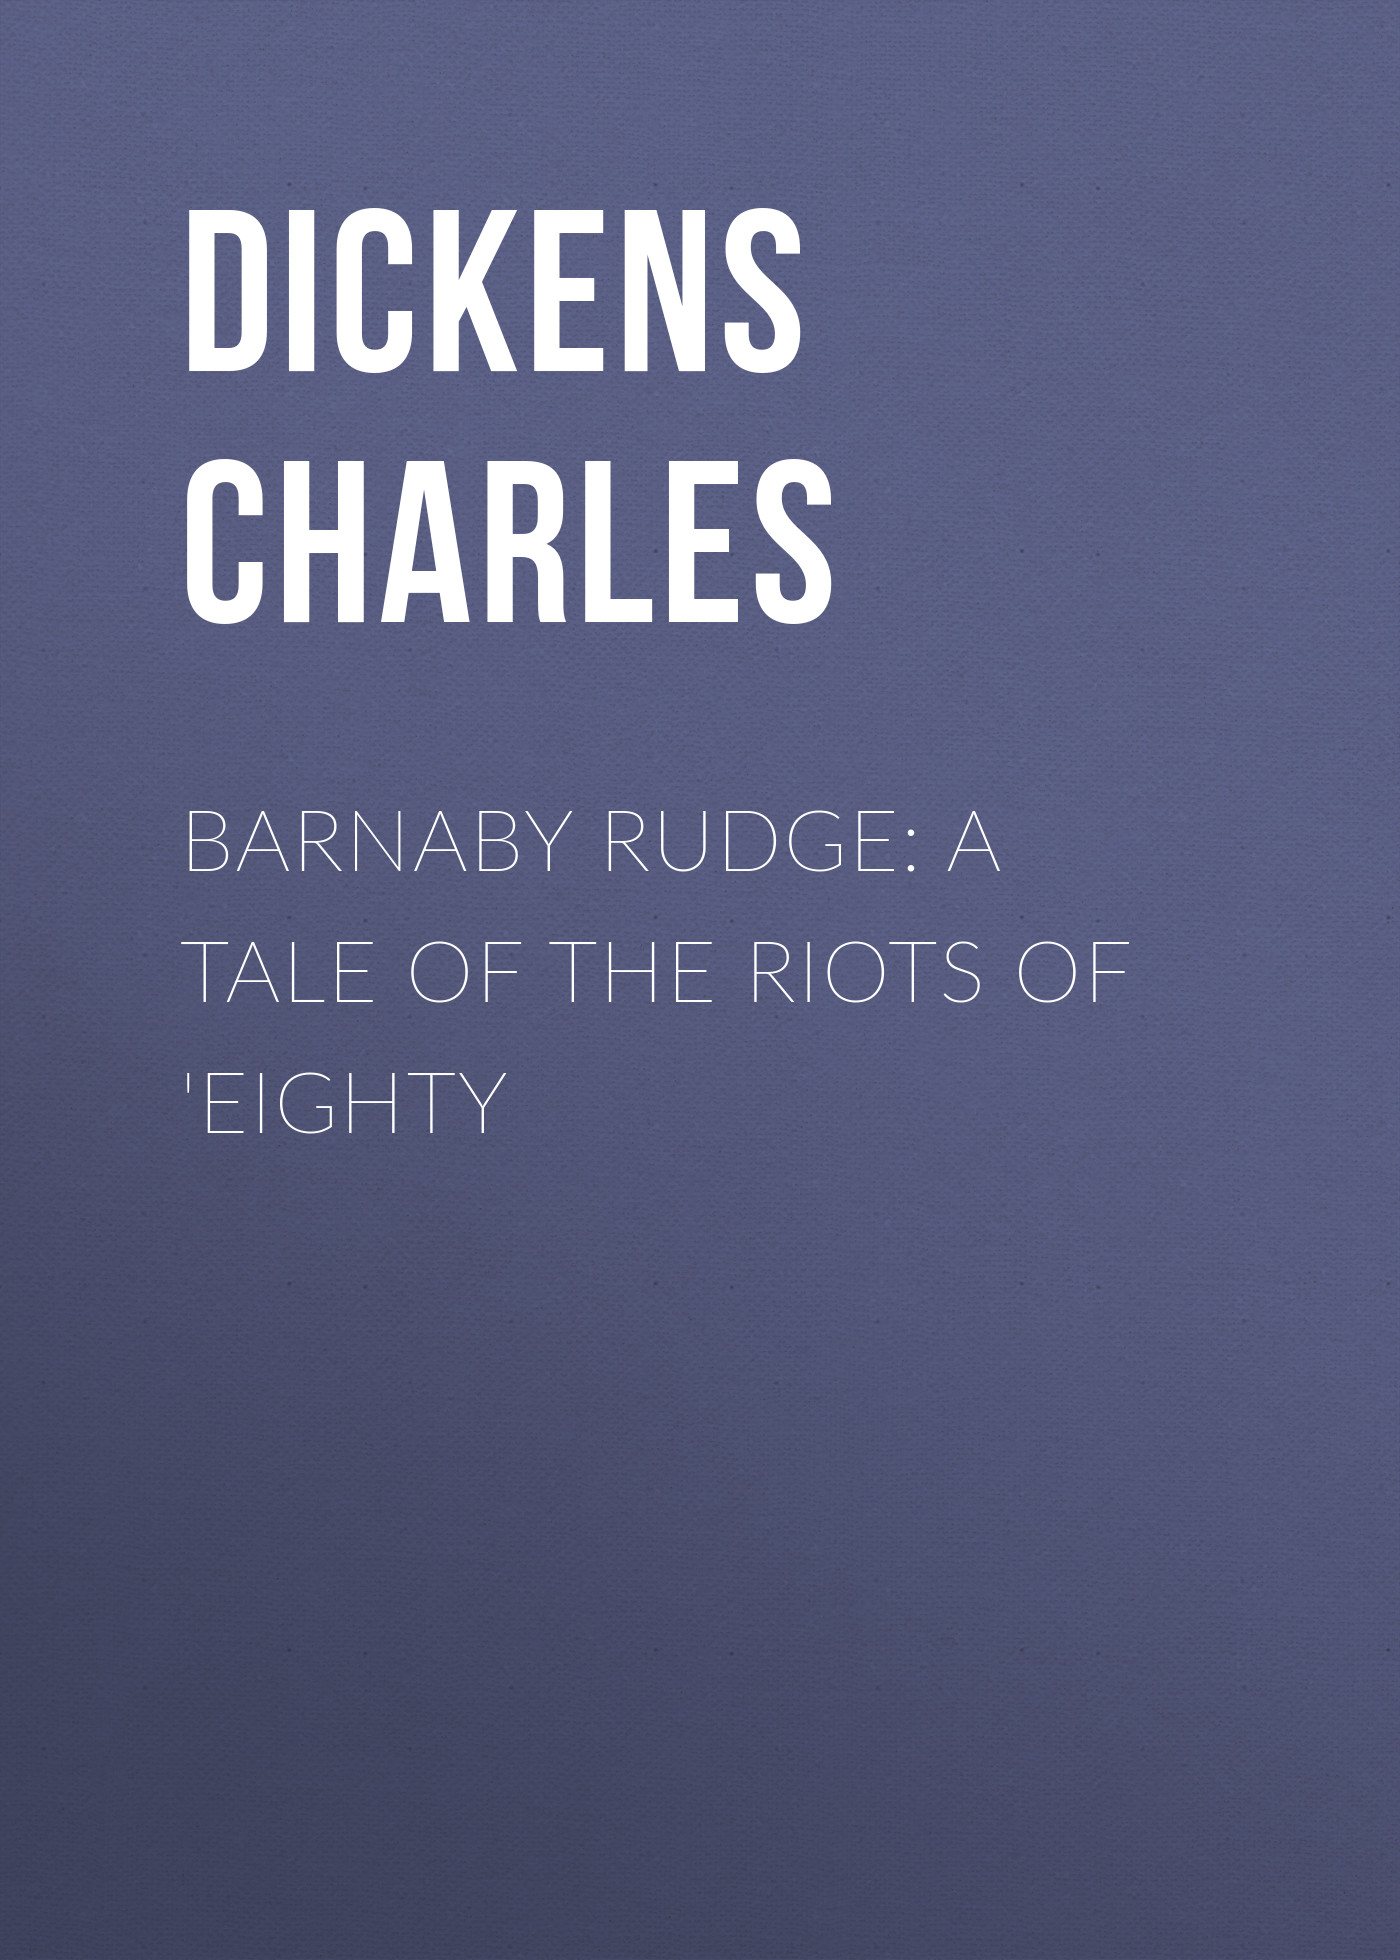 Книга Barnaby Rudge: A Tale of the Riots of 'Eighty из серии , созданная Charles Dickens, может относится к жанру Зарубежная старинная литература, Зарубежная классика. Стоимость электронной книги Barnaby Rudge: A Tale of the Riots of 'Eighty с идентификатором 25091428 составляет 0 руб.